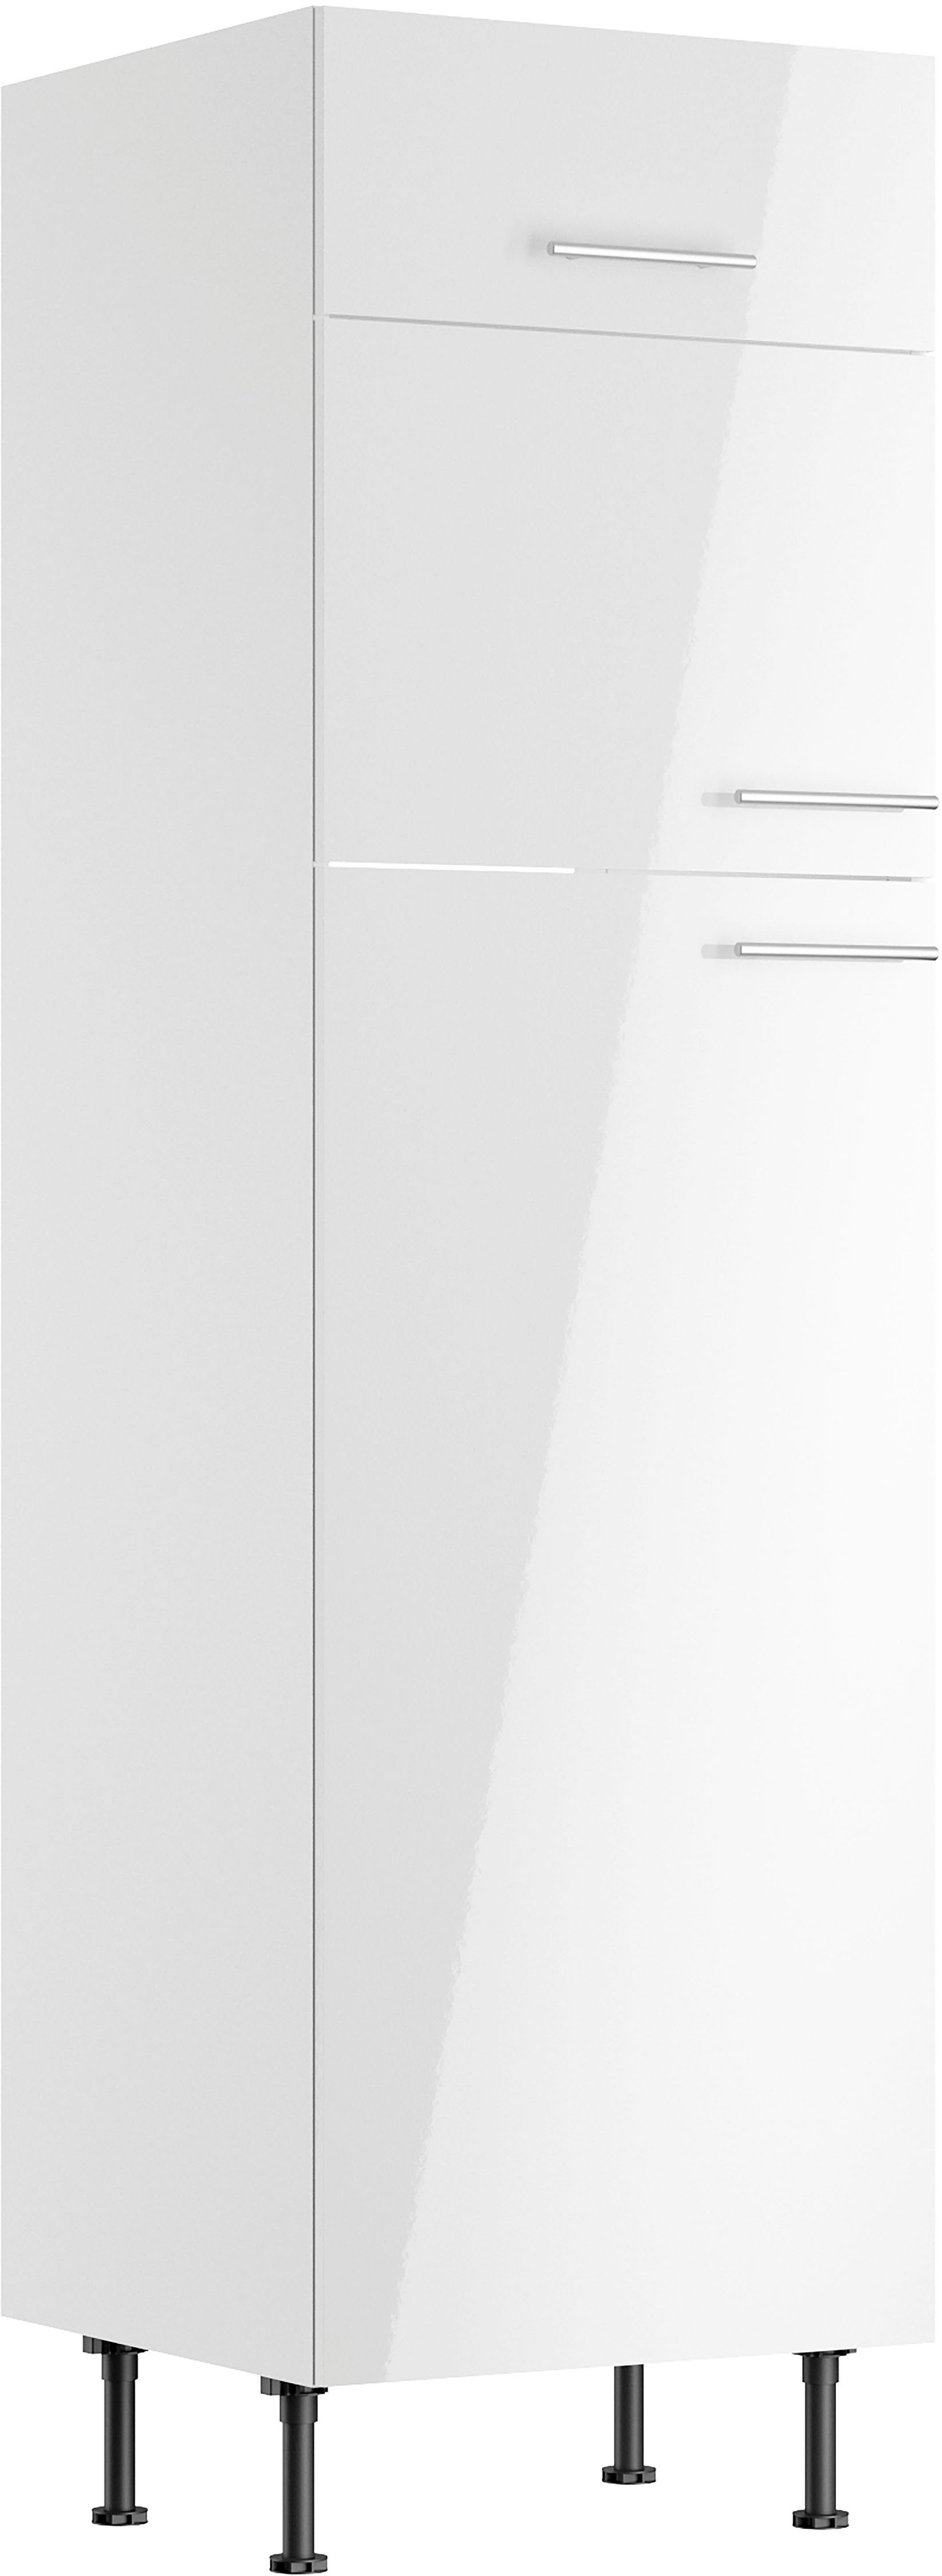 60 cm Klara weiß Kühlumbauschrank OPTIFIT lackiert/weiß Breite